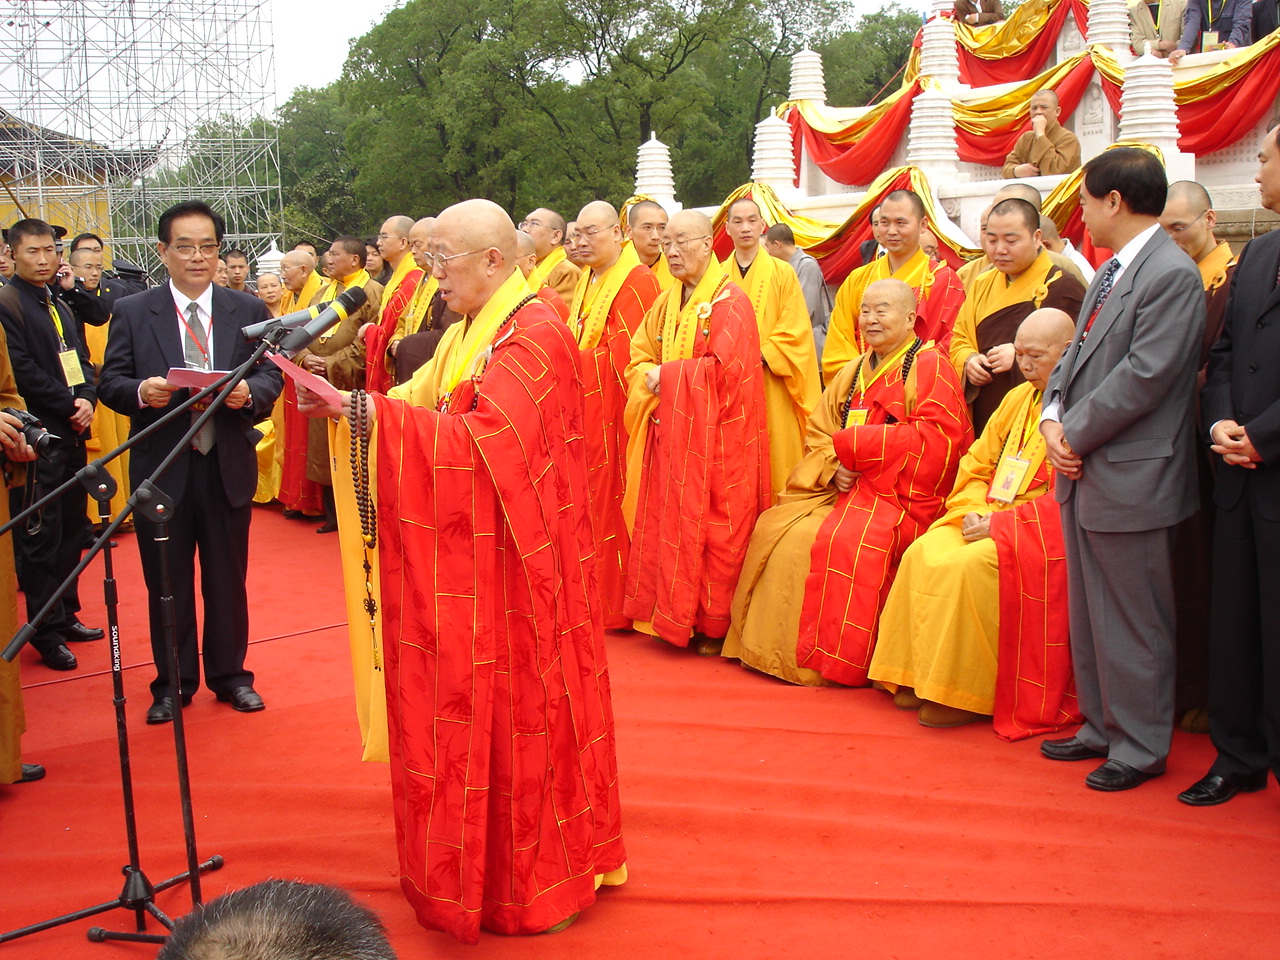 【佛教人物志】:中国佛教协会第七届会长 —— 一诚